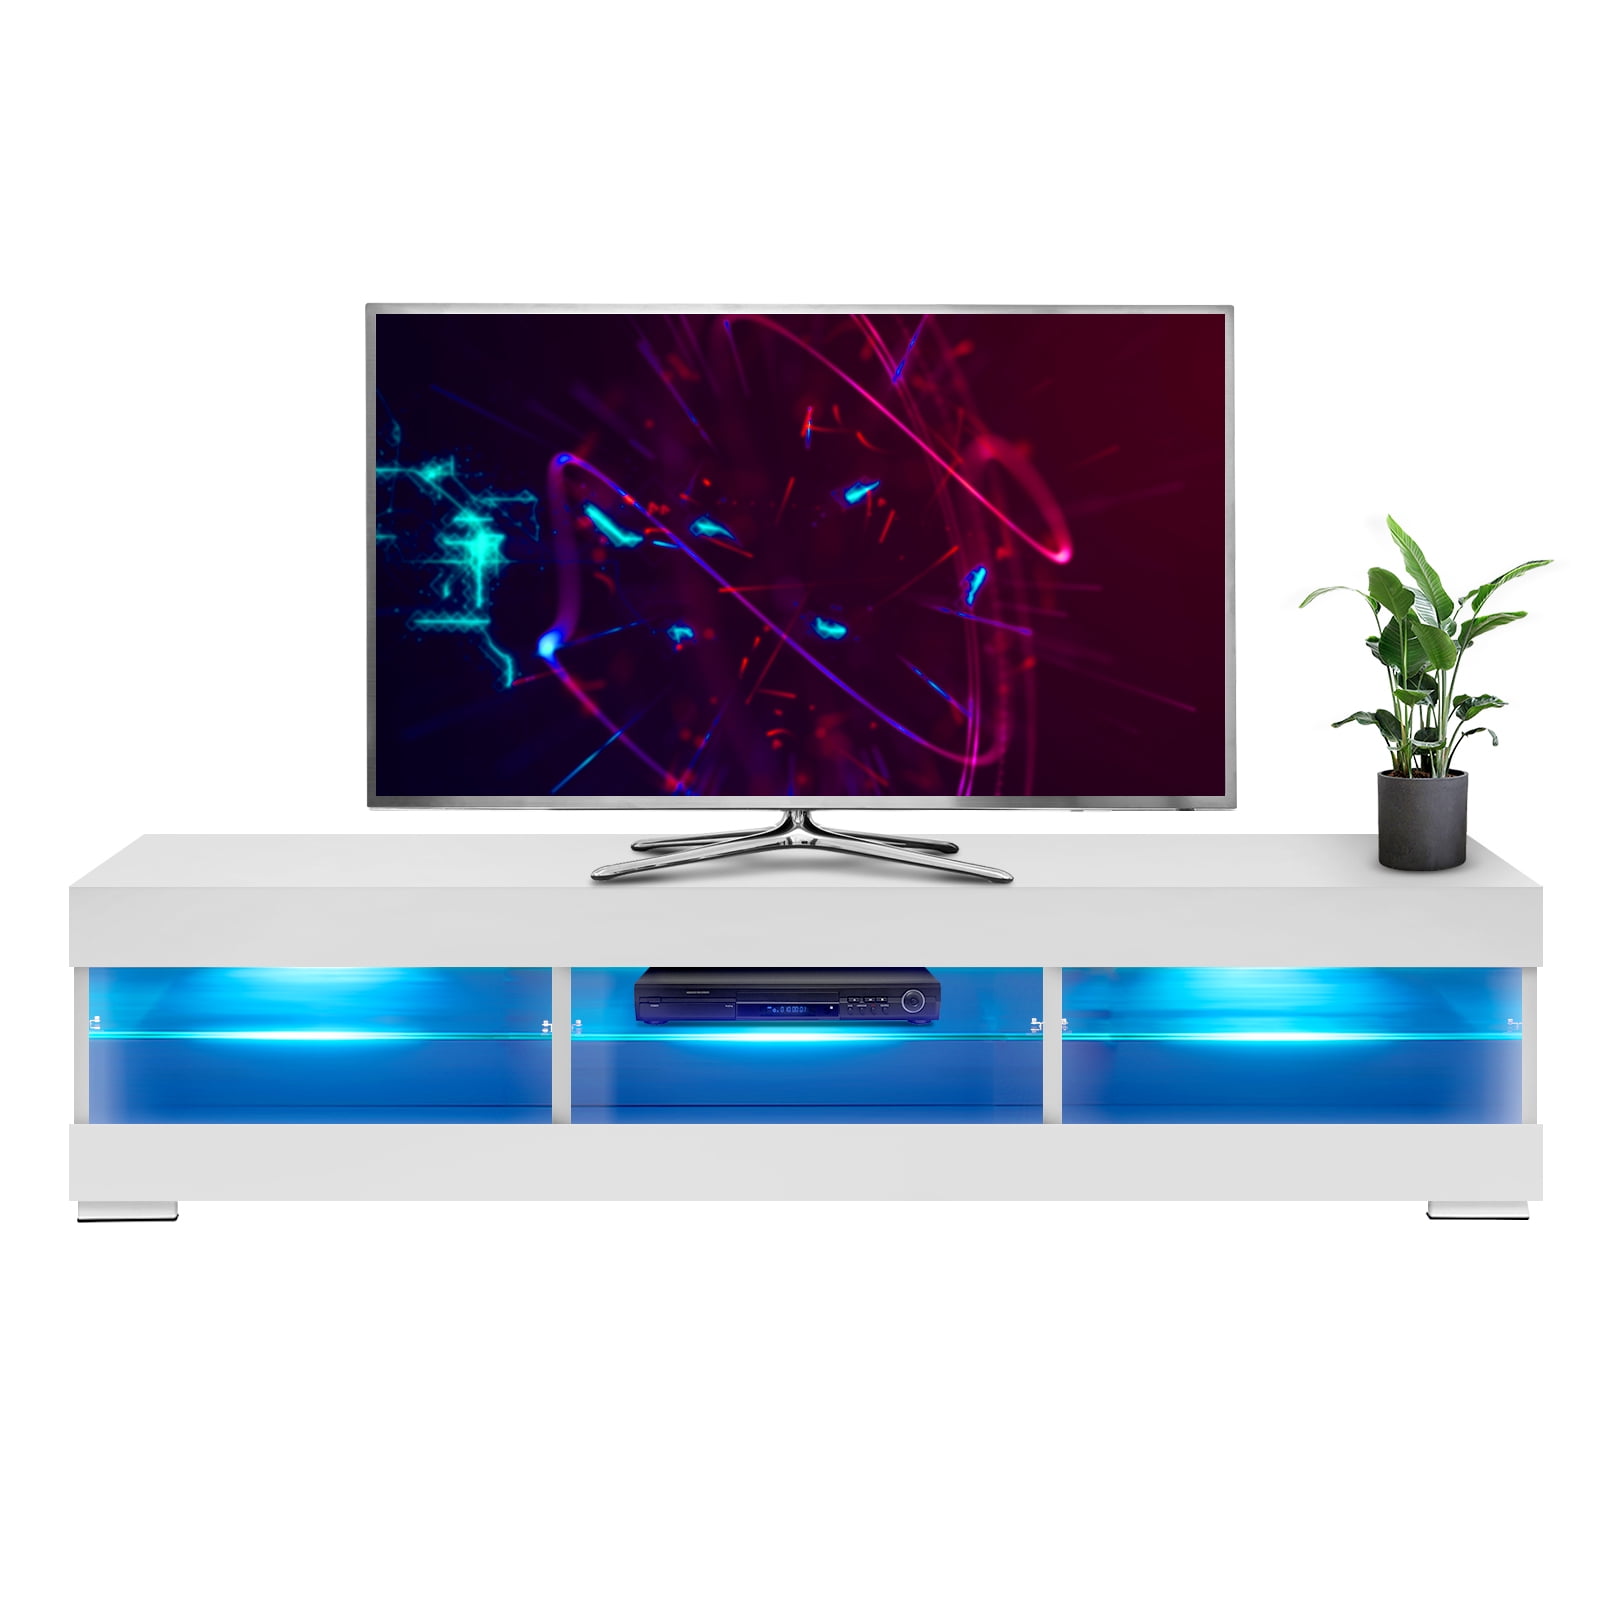  HOMMPA Soporte de TV LED para televisores de 65 pulgadas,  moderno centro de entretenimiento LED de 57 pulgadas con luces LED, consola  de TV pequeña, mesa multimedia con estantes de vidrio